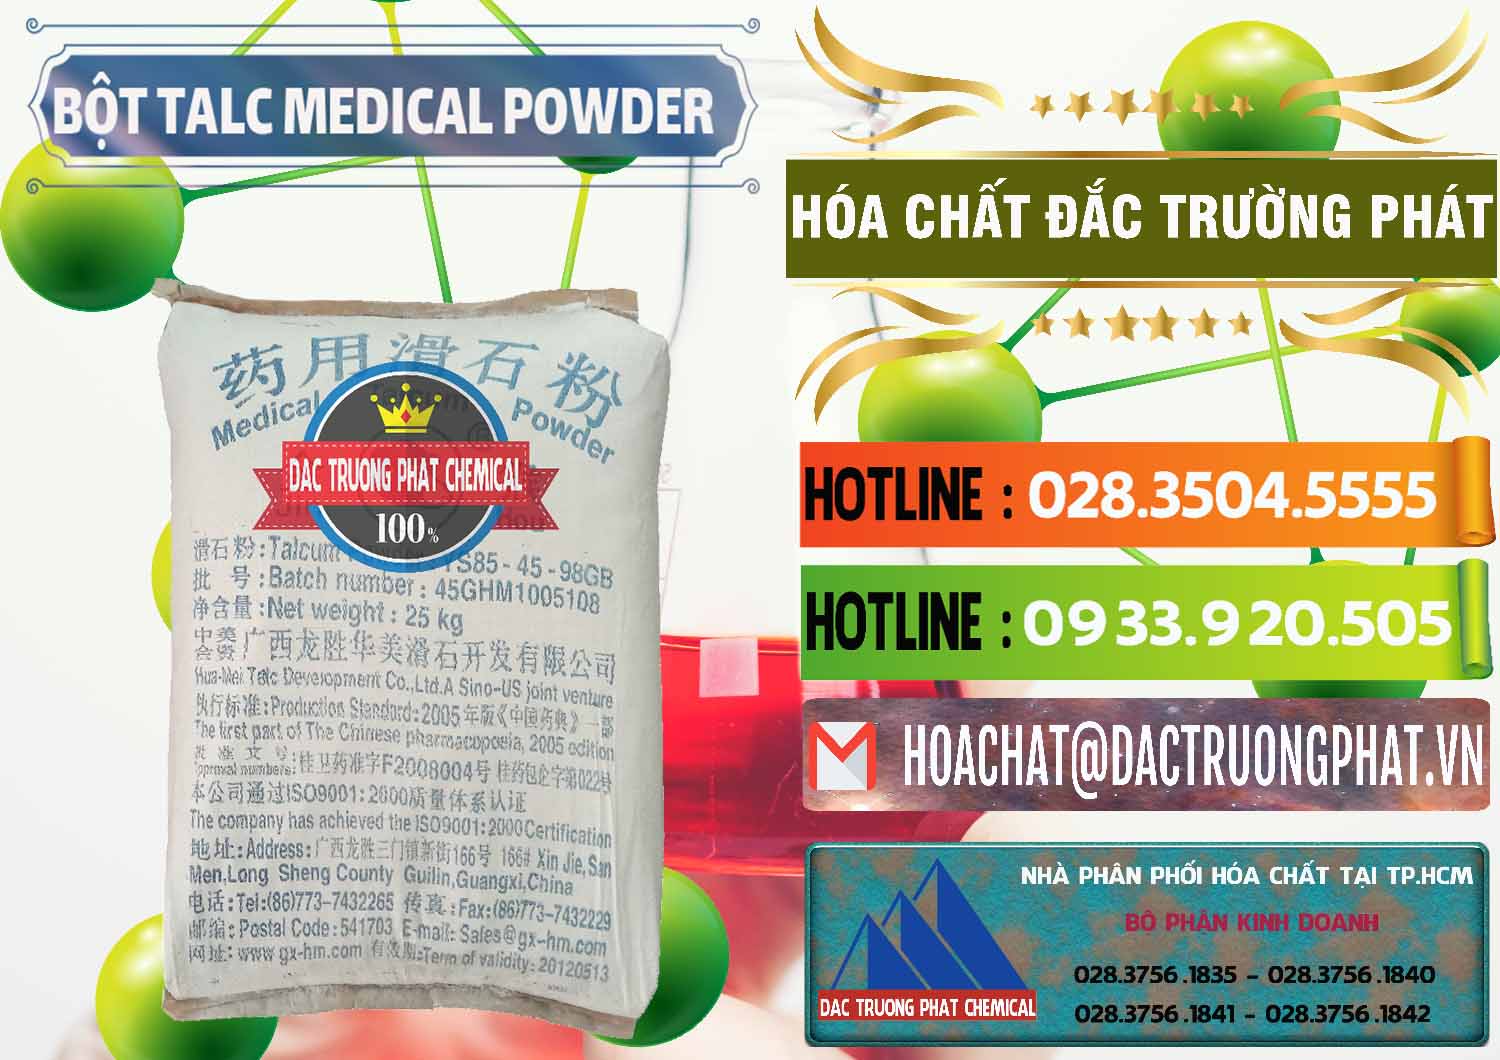 Cty chuyên cung ứng ( bán ) Bột Talc Medical Powder Trung Quốc China - 0036 - Phân phối - nhập khẩu hóa chất tại TP.HCM - cungcaphoachat.com.vn